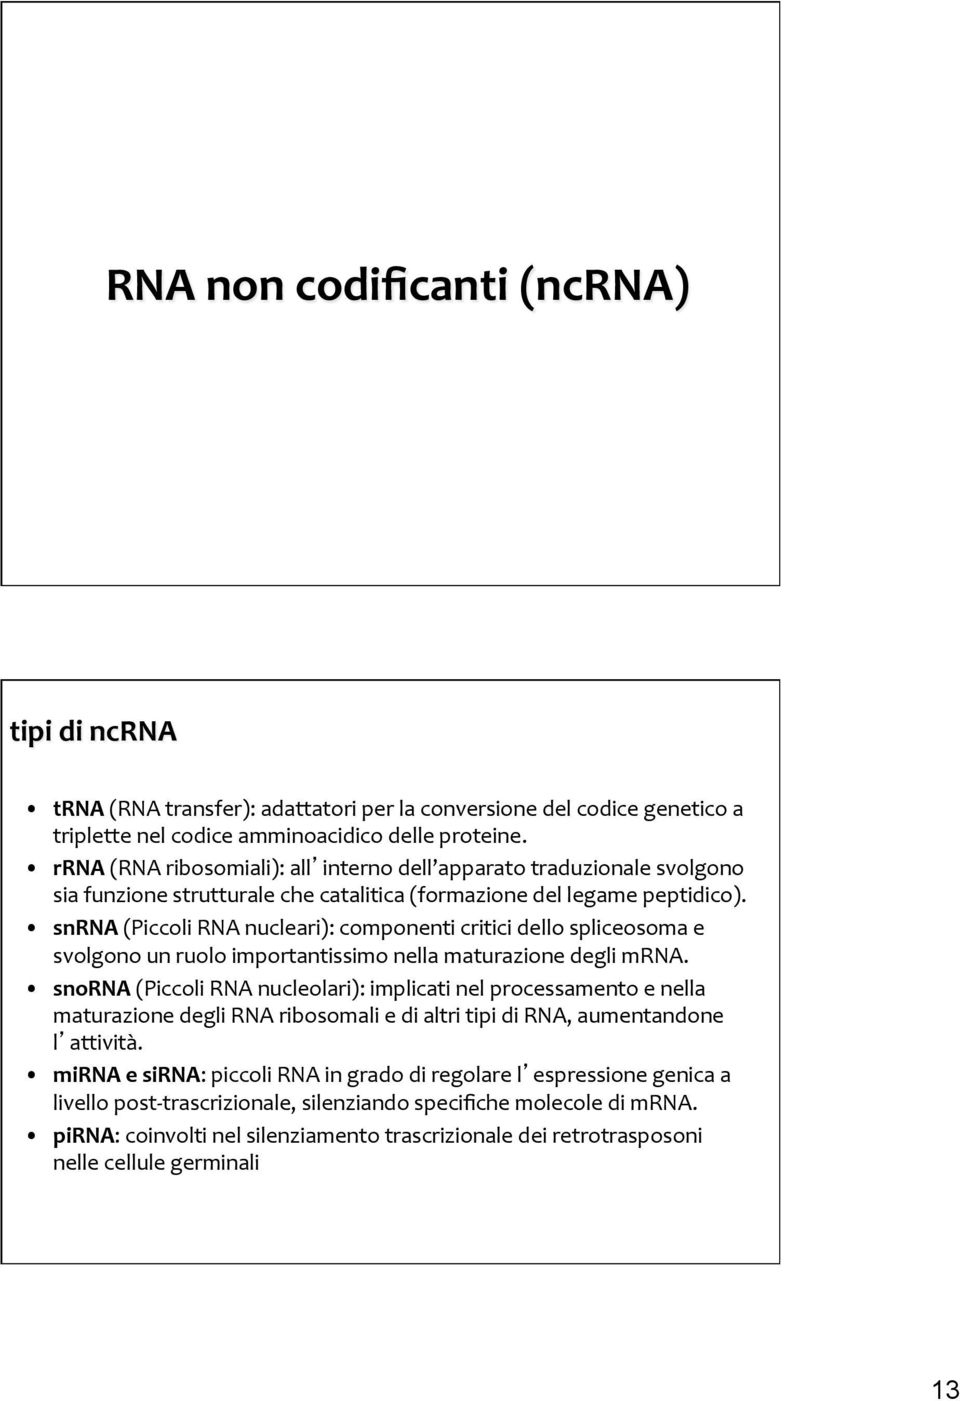 snrna (Piccoli RNA nucleari): componenti critici dello spliceosoma e svolgono un ruolo importantissimo nella maturazione degli mrna.